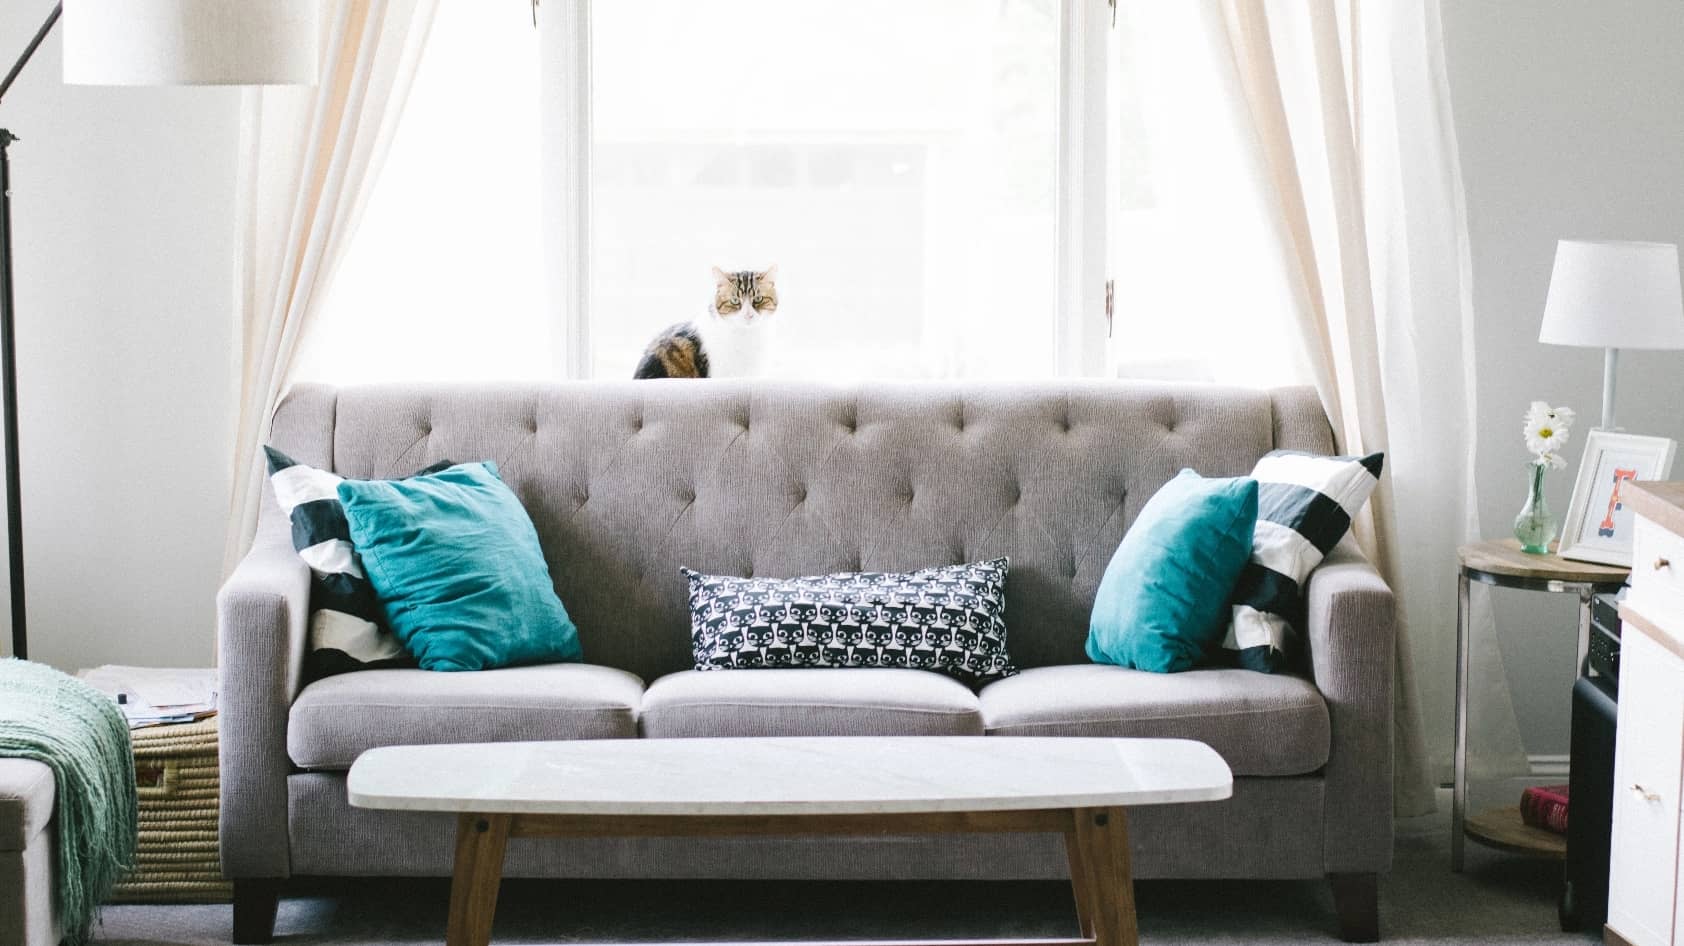 カラフルなクッションを置いているグレーのソファーがお部屋の中心にある風景